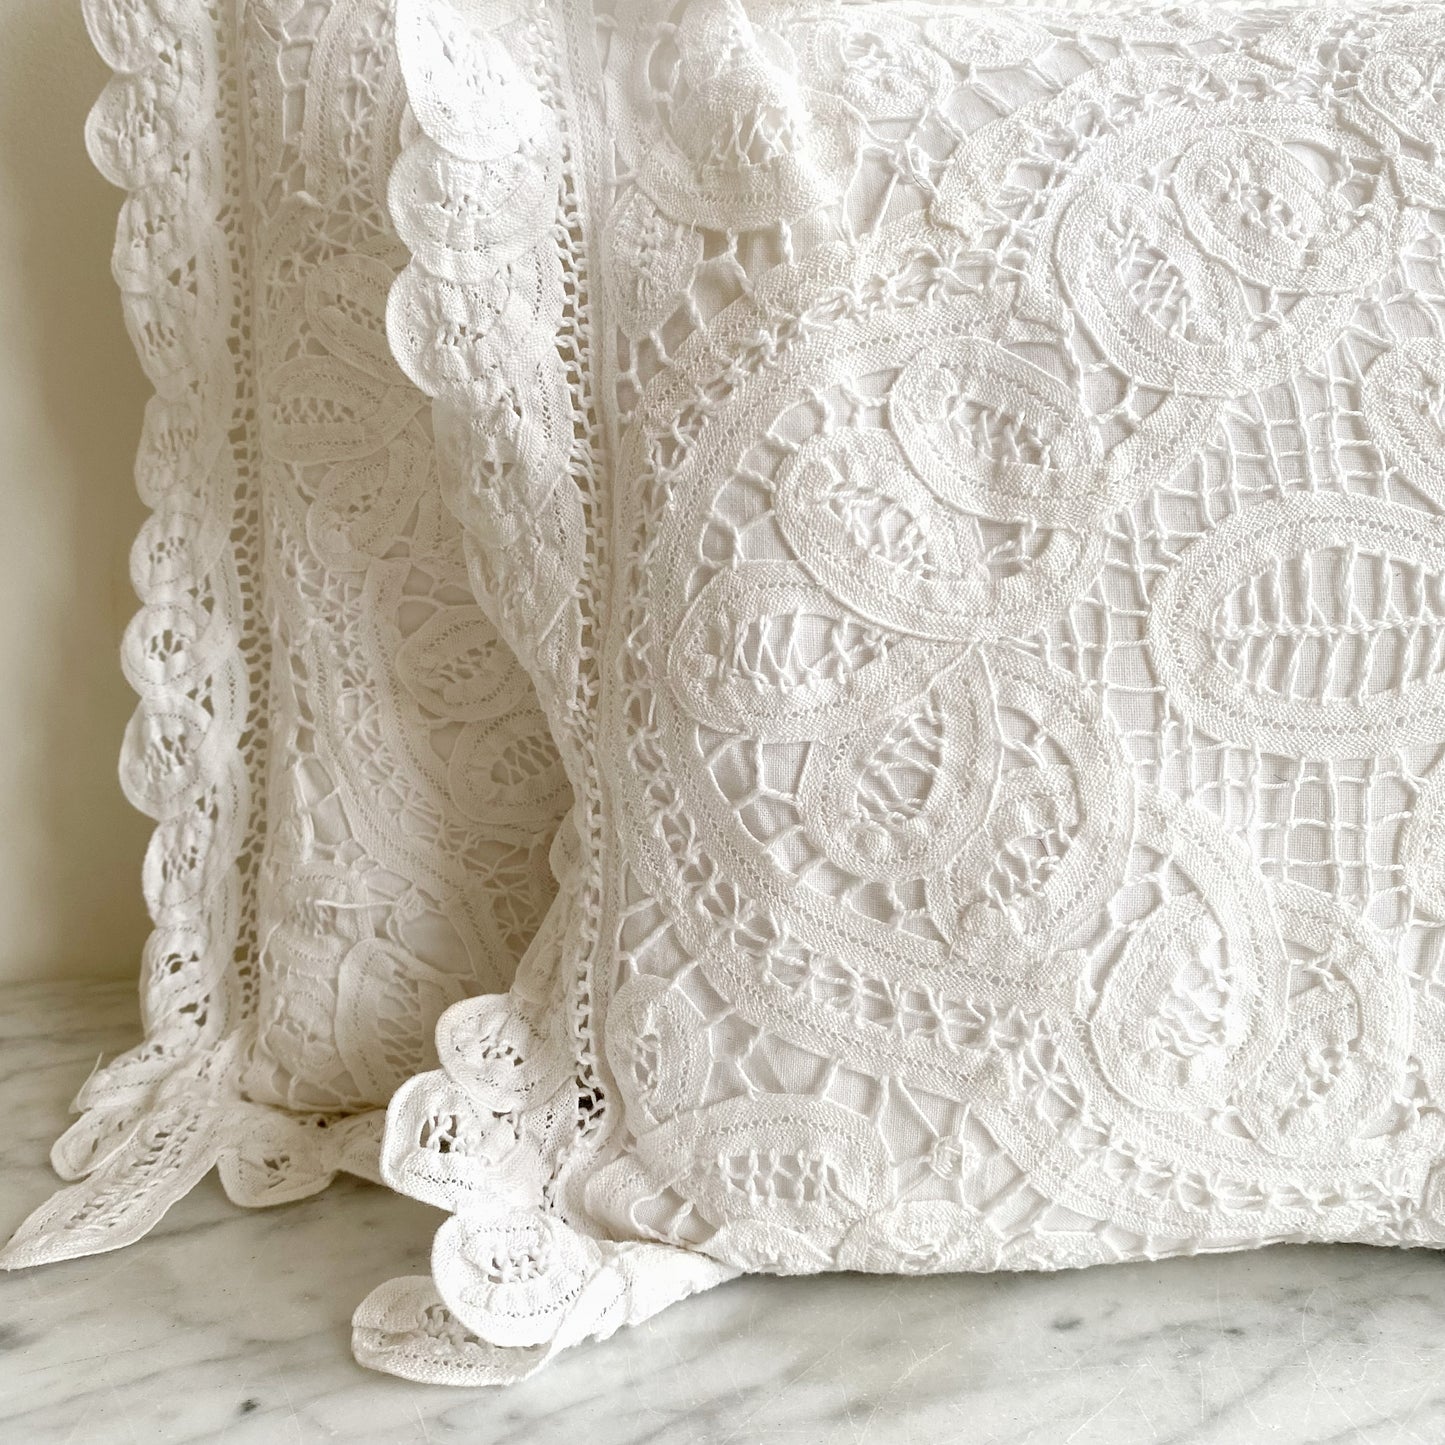 Vintage Crochet Lace Pillow, 11x14